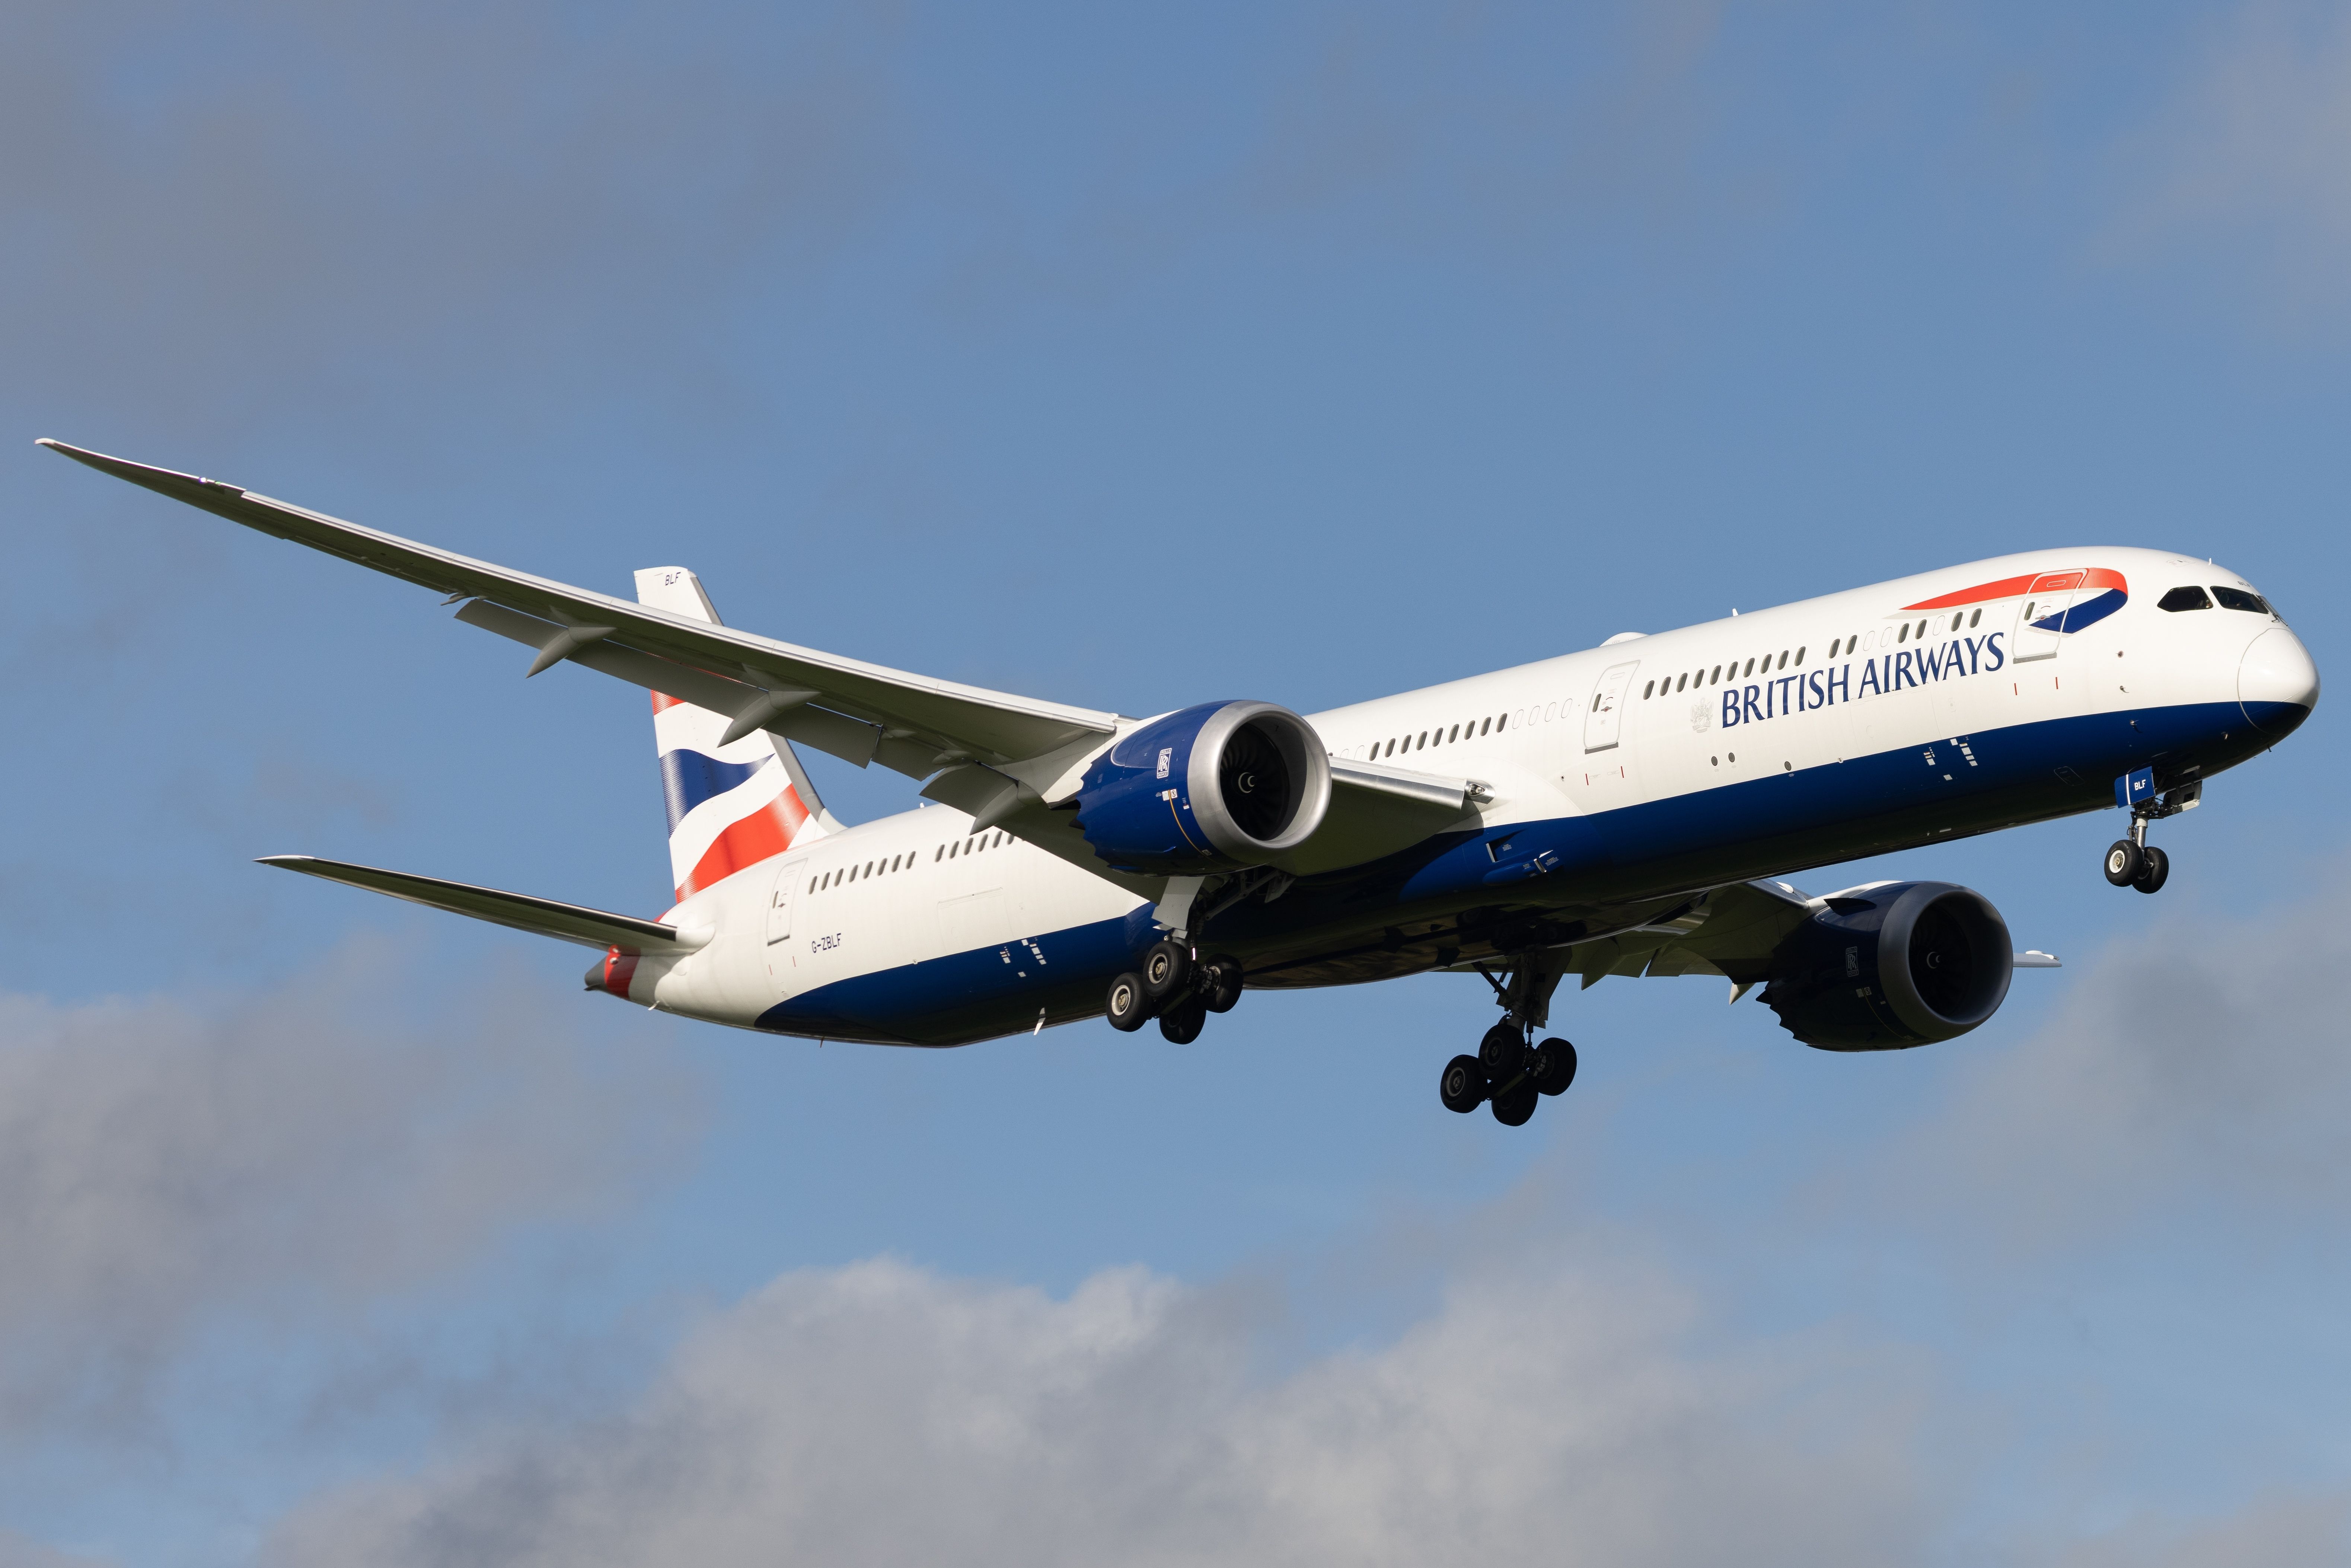 British Airways Boeing 787 landing at London Heathrow Airport (LHR) shutterstock_2368783705